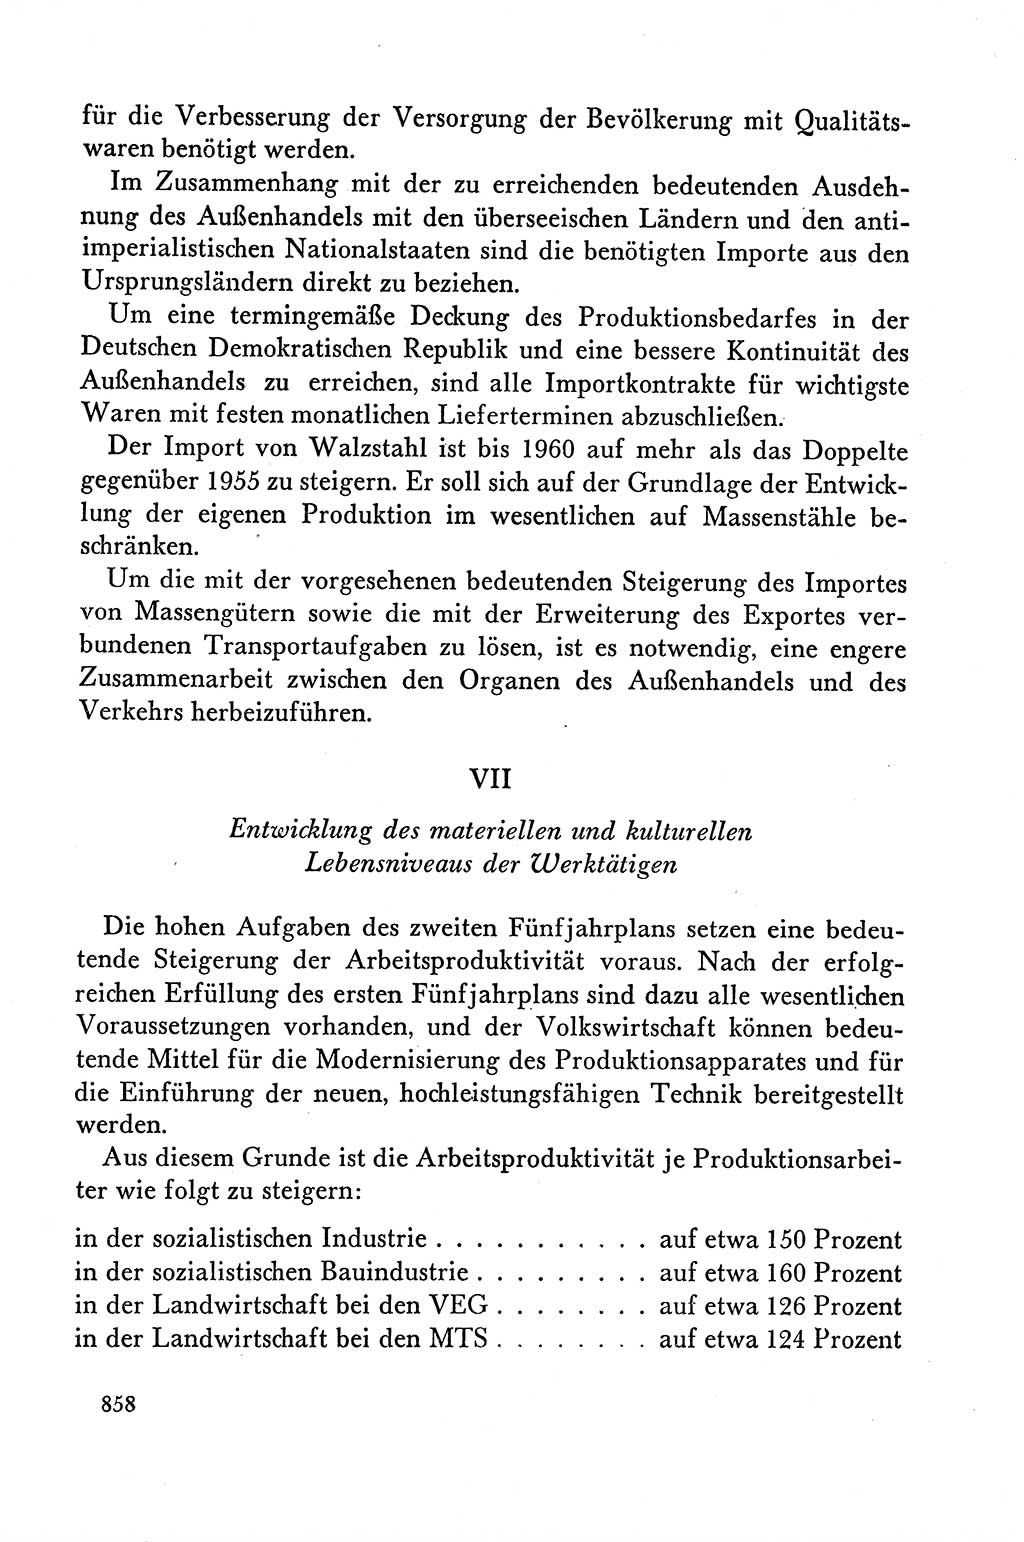 Dokumente der Sozialistischen Einheitspartei Deutschlands (SED) [Deutsche Demokratische Republik (DDR)] 1958-1959, Seite 858 (Dok. SED DDR 1958-1959, S. 858)